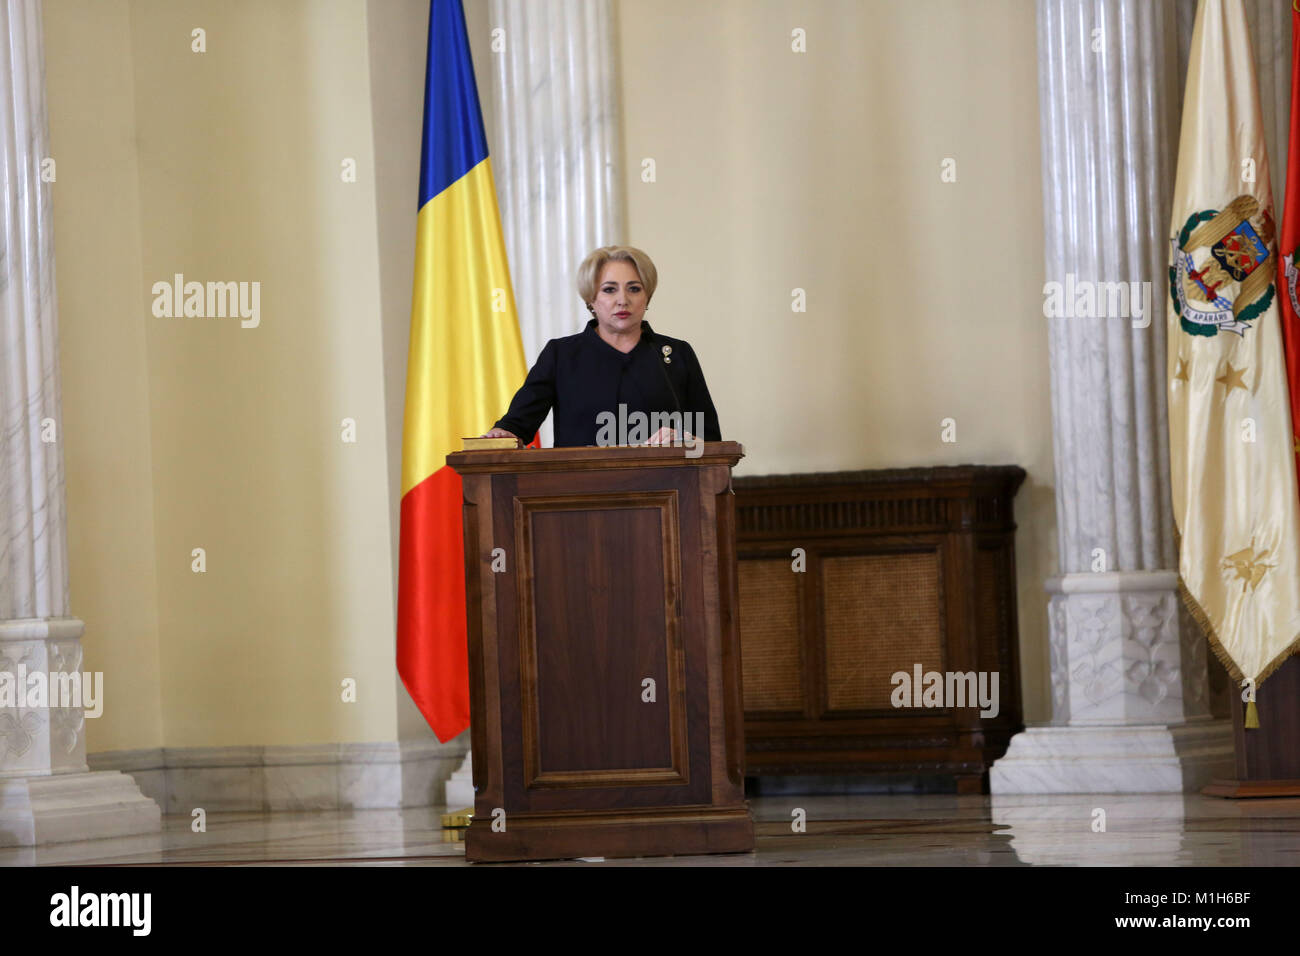 Bucarest, Romania - 29 Gennaio 2018: Primo ministro rumeno Viorica Dancila durante un giuramento cerimonia al Palazzo Cotroceni a Bucarest. Foto Stock